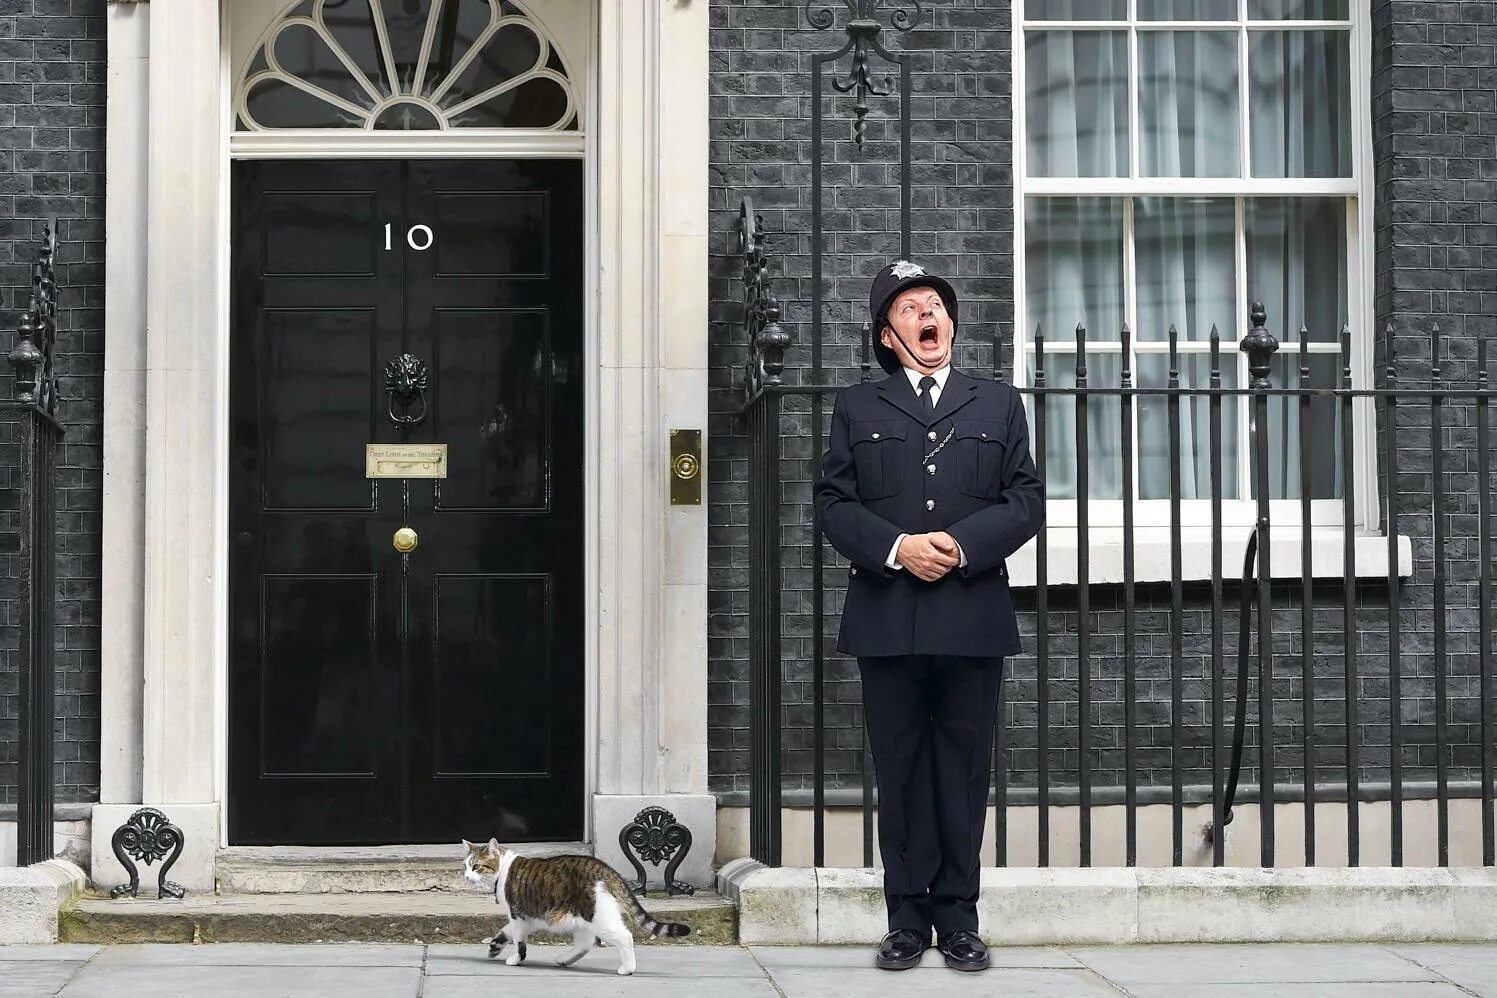 Даунинг-стрит 10 в Лондоне. Резиденция на Даунинг стрит 10 в Лондоне. Премьер-министр Великобритании на Даунинг стрит. Резиденция премьер-министра на Даунинг стрит. He can also